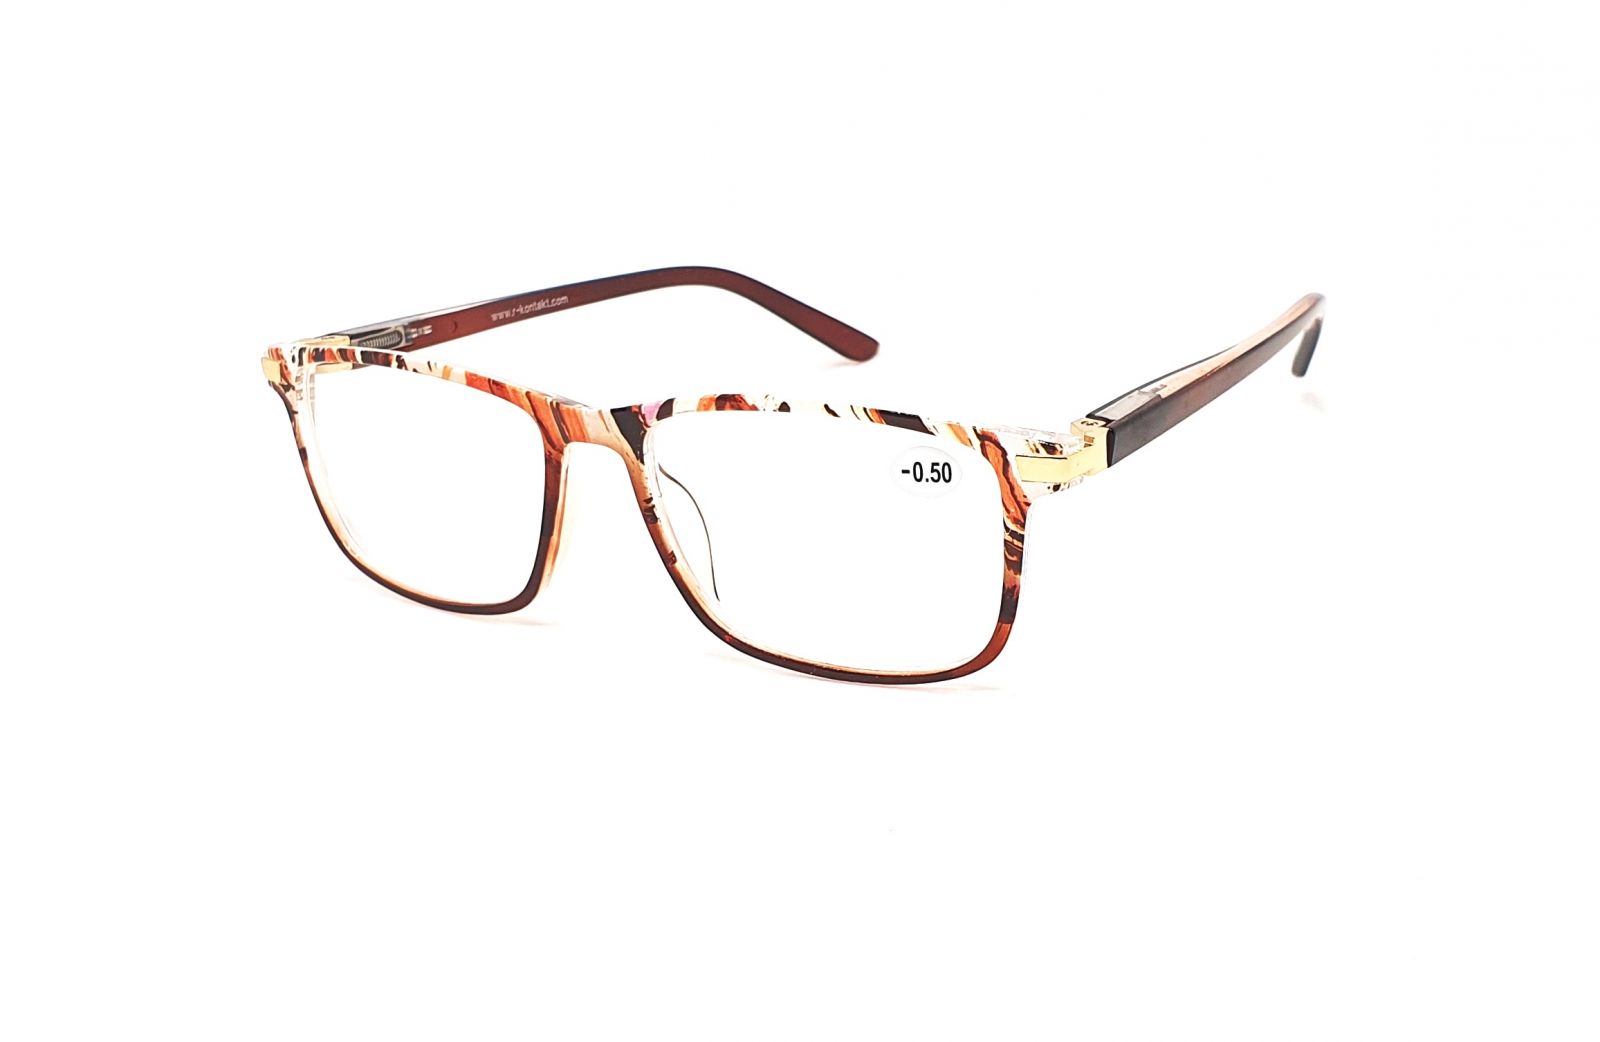 Dioptrické brýle V3075 / -4,50 brown flex